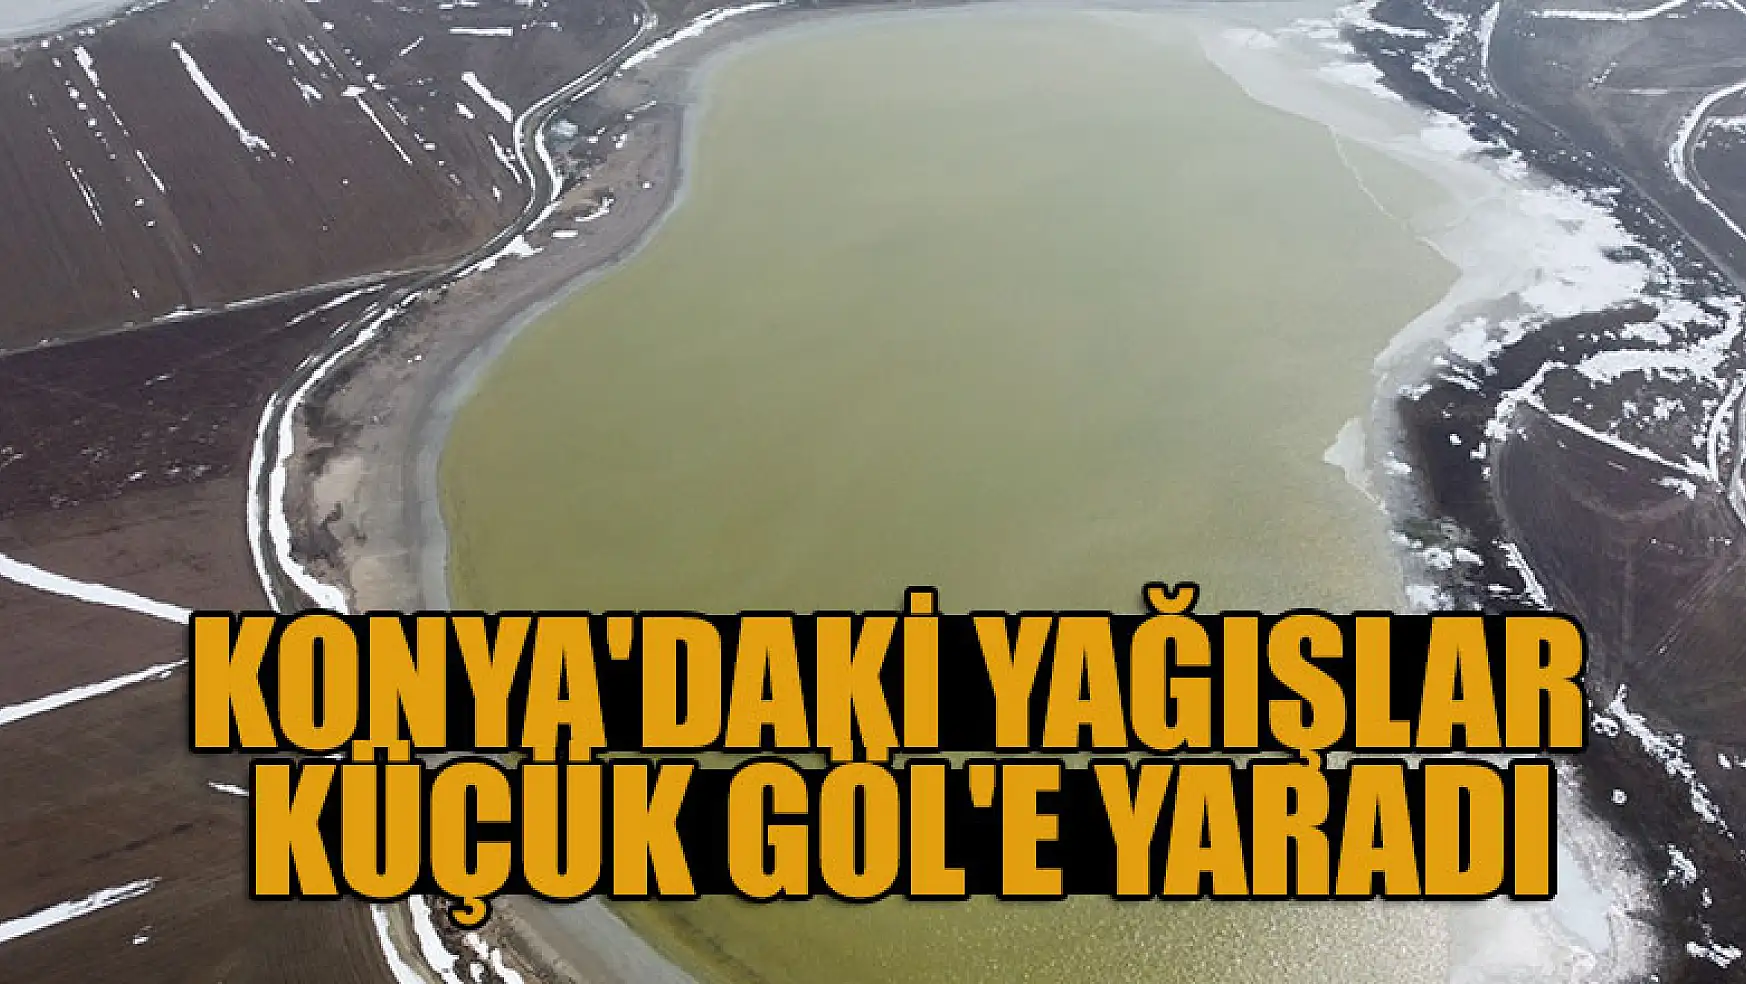 Konya'da yağışlar Küçük Göl'e yaradı